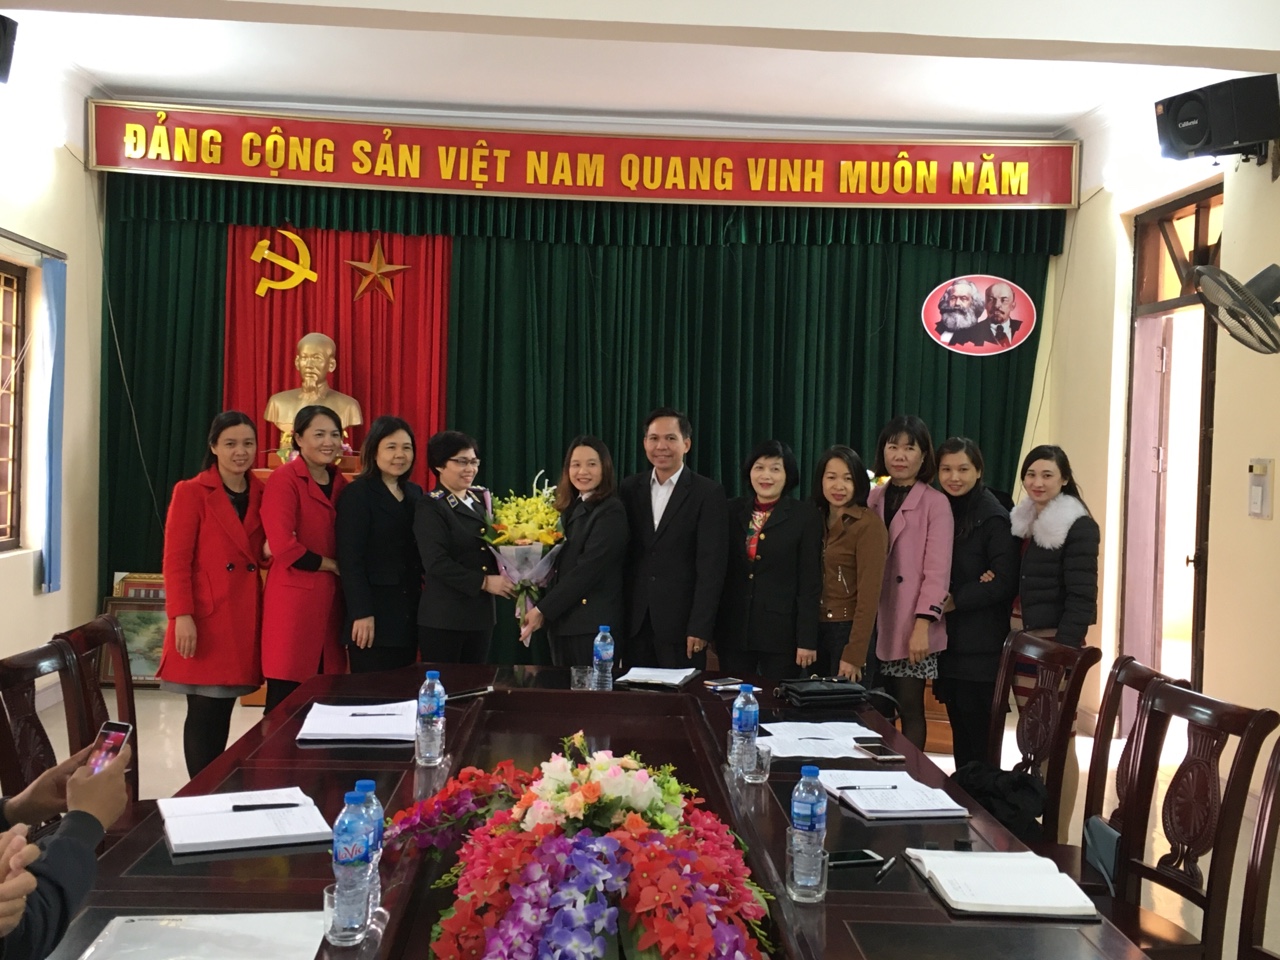 Cục Thi hành án dân sự tỉnh Hải Dương công bố Quyết định bổ nhiệm lại chức vụ Phó Chi cục trưởng Chi cục Thi hành án dân sự thành phố Chí Linh, tỉnh Hải Dương